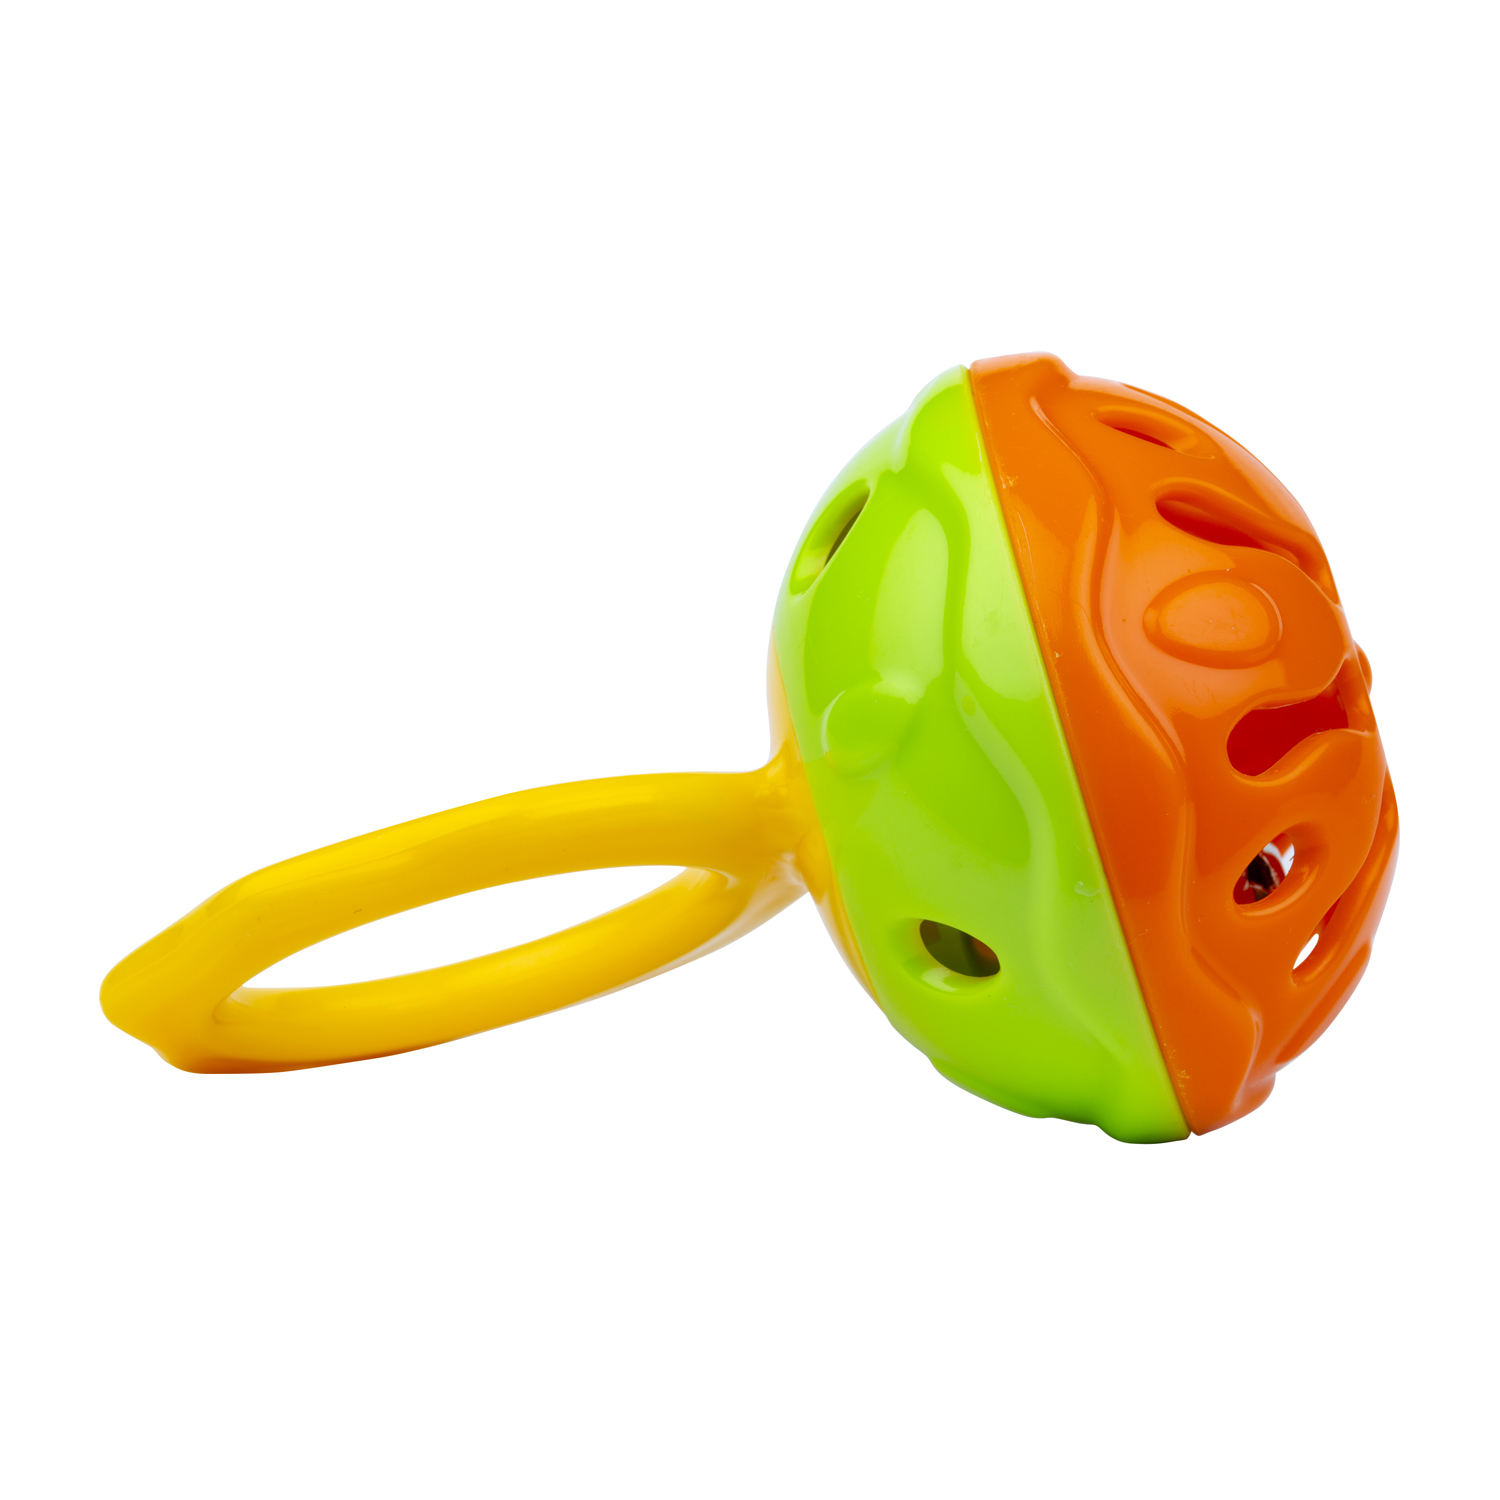 Погремушка Halilit пластмассовая с ручкой Мини-колокольчик оранжево-зеленый - фото 2